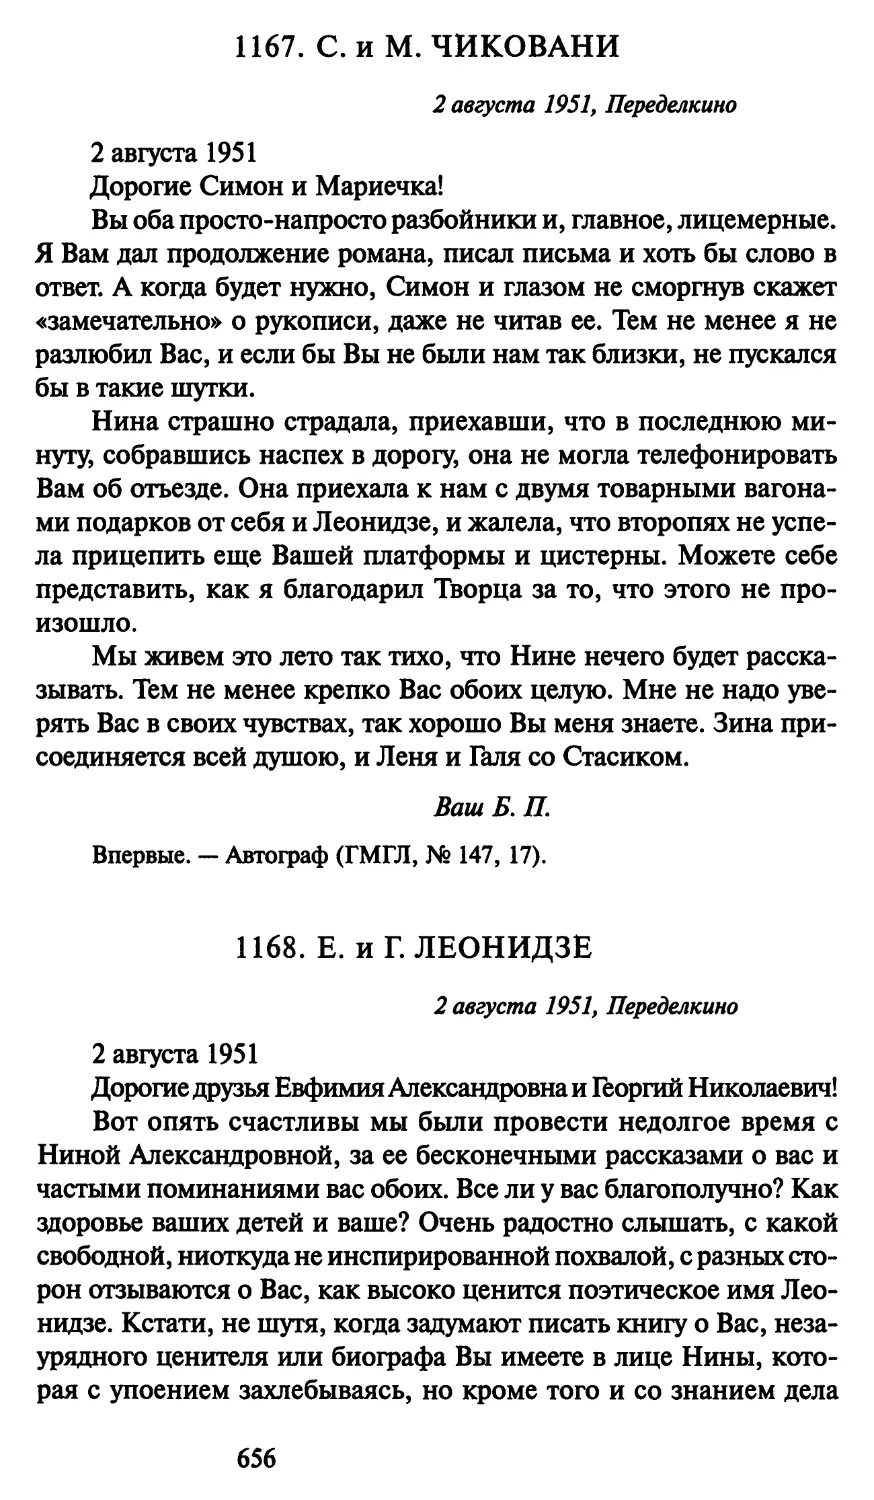 1168. Е. и Г. Леонидзе 2 августа 1951